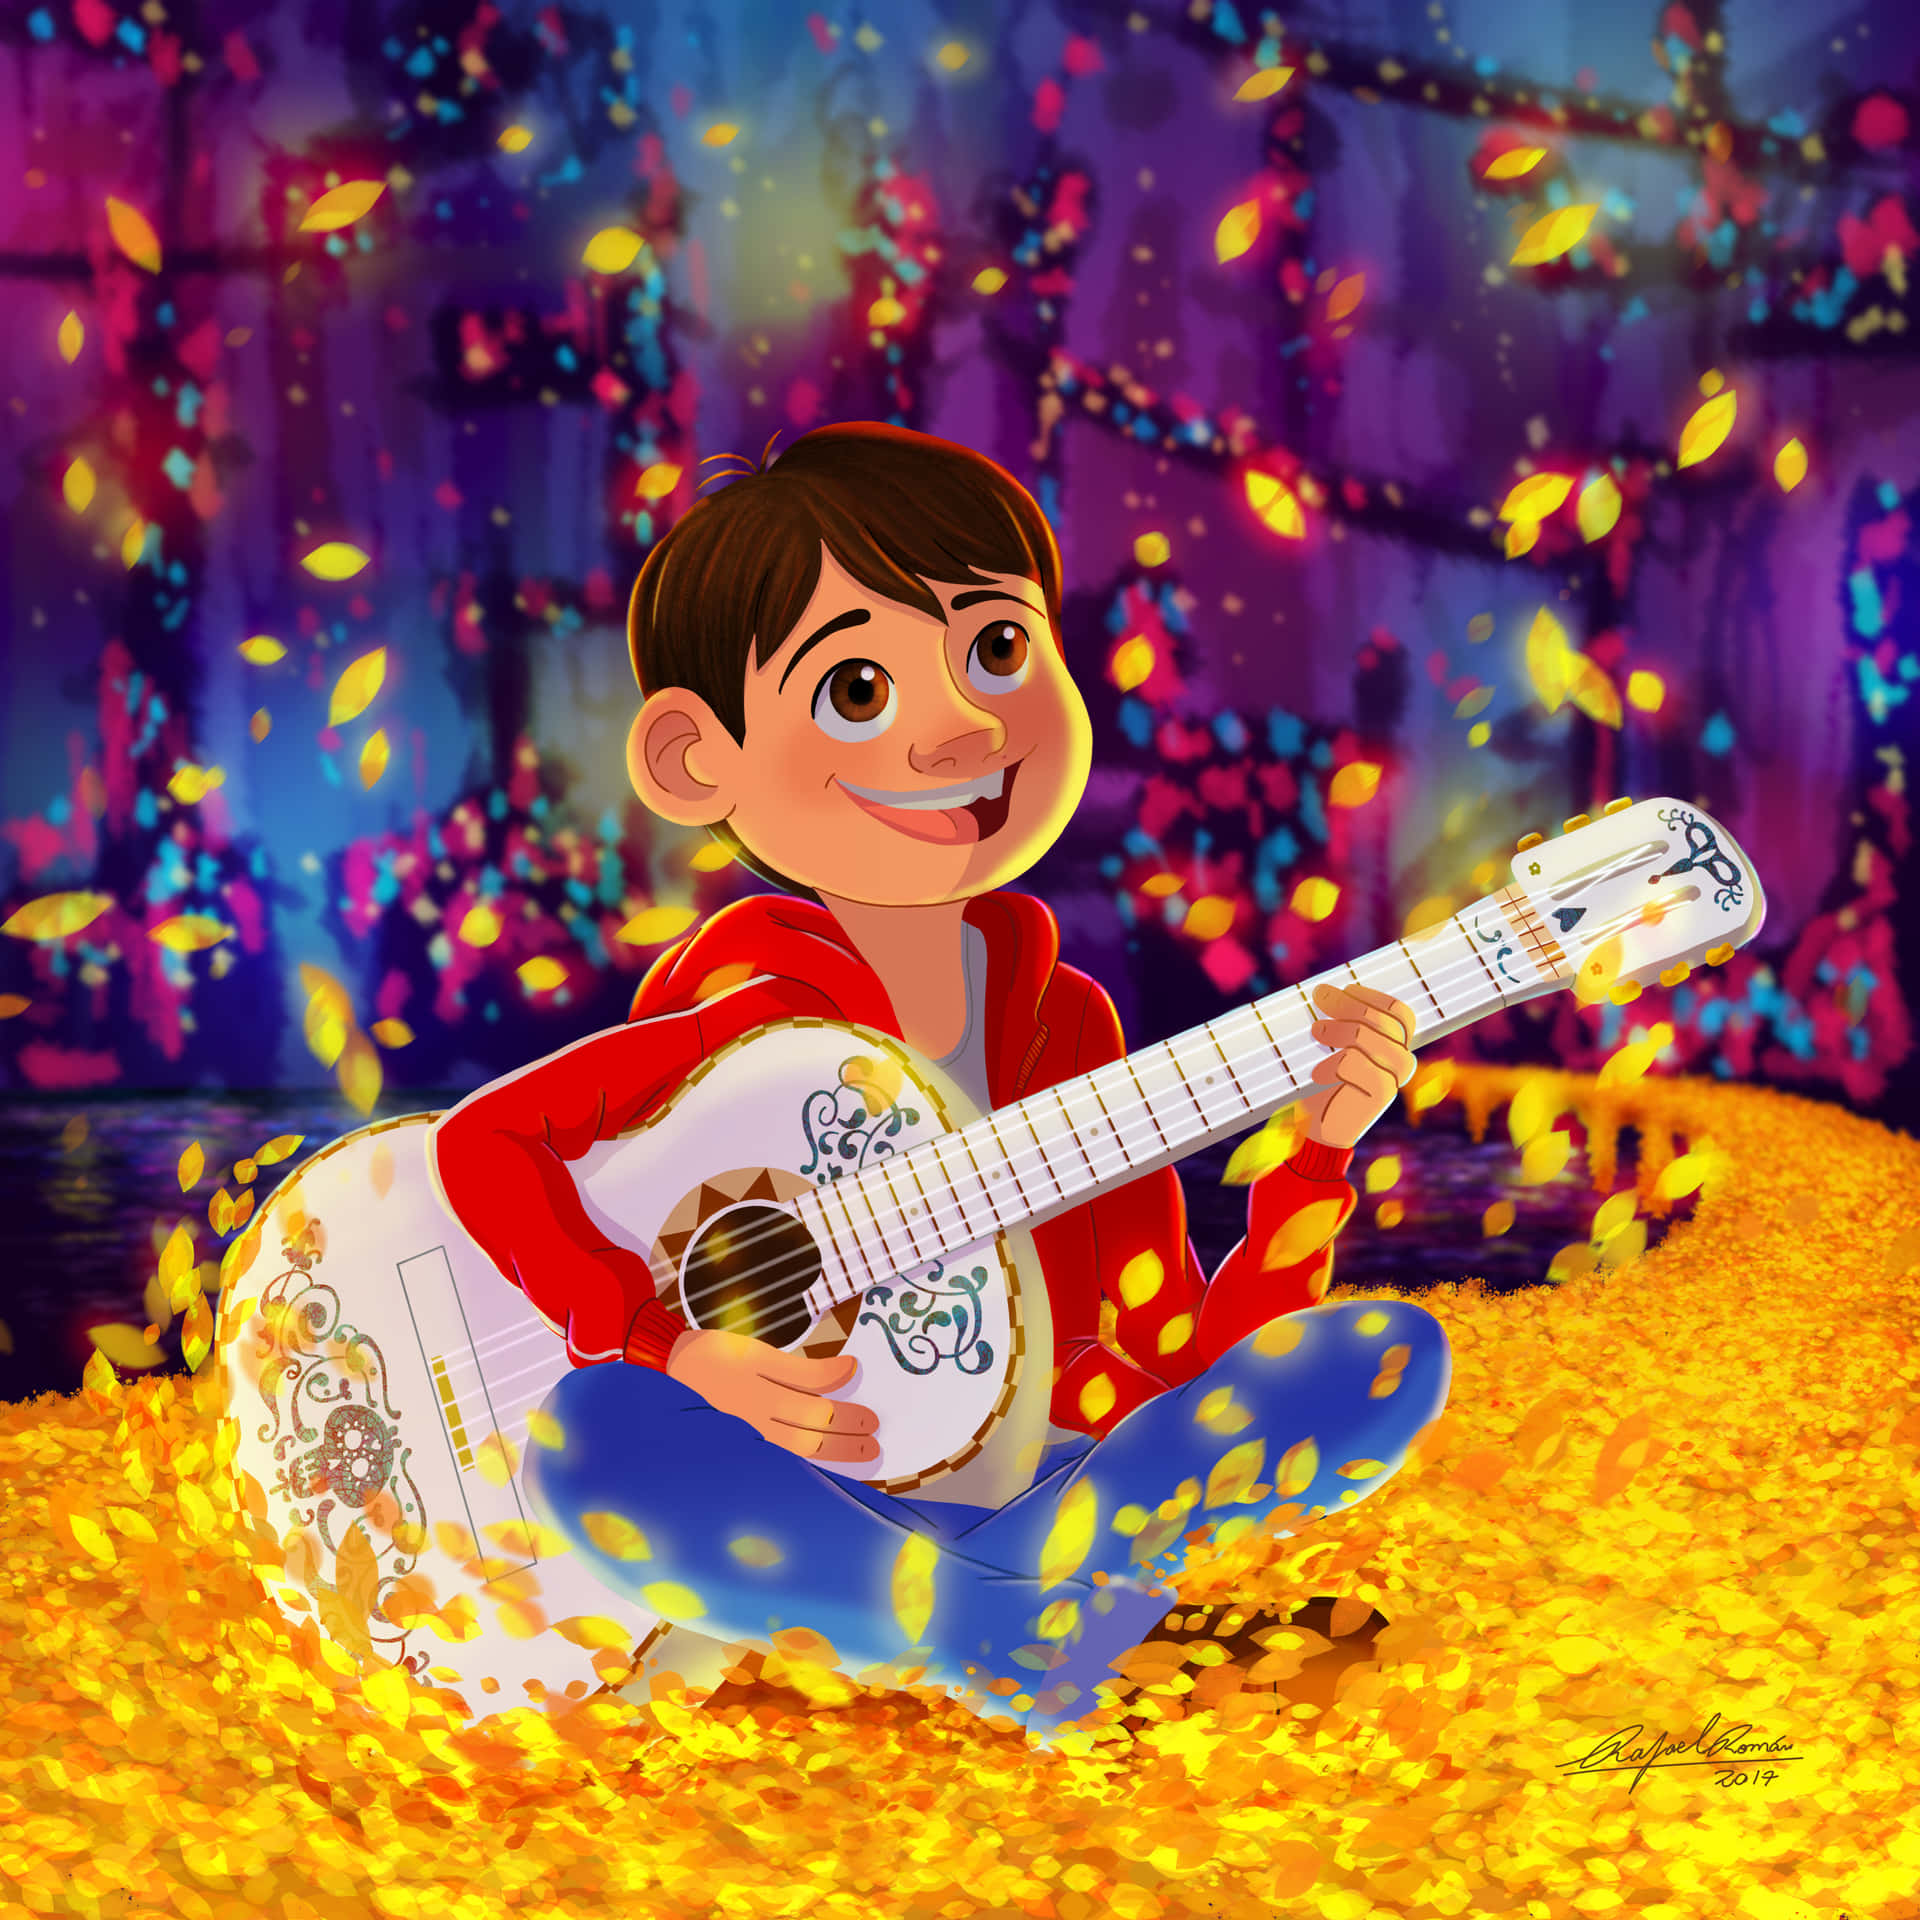 Følg Miguel og hans smukke rejse til Dødsriget i Disneys Coco! Wallpaper